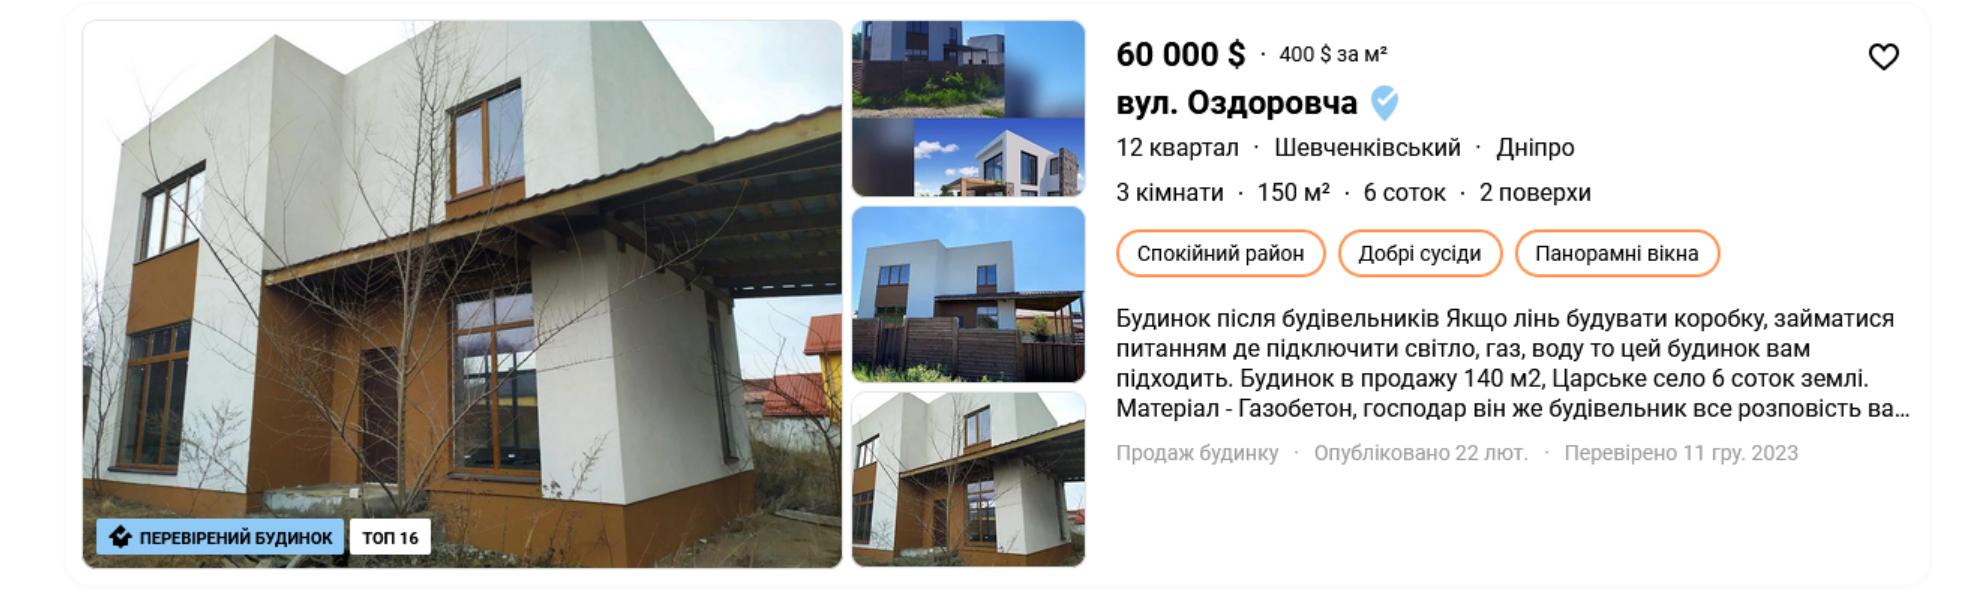 в Днепропетровске в районе 12 квартал на продажу выставлен шикарный дом-новостройка